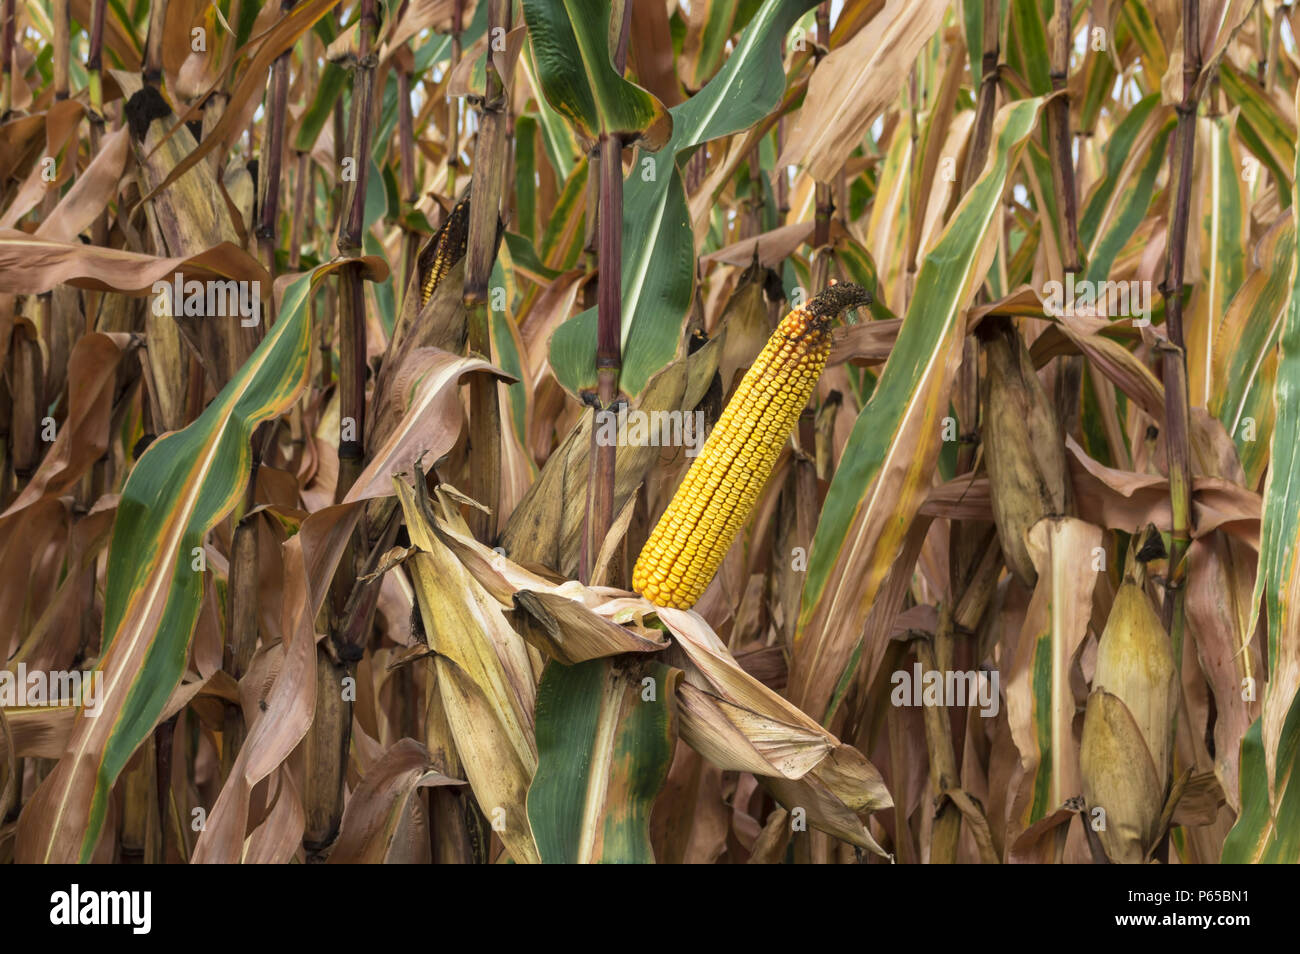 Épis de maïs mûr agricoles cultivées en champ de maïs prêts pour la récolte. Banque D'Images